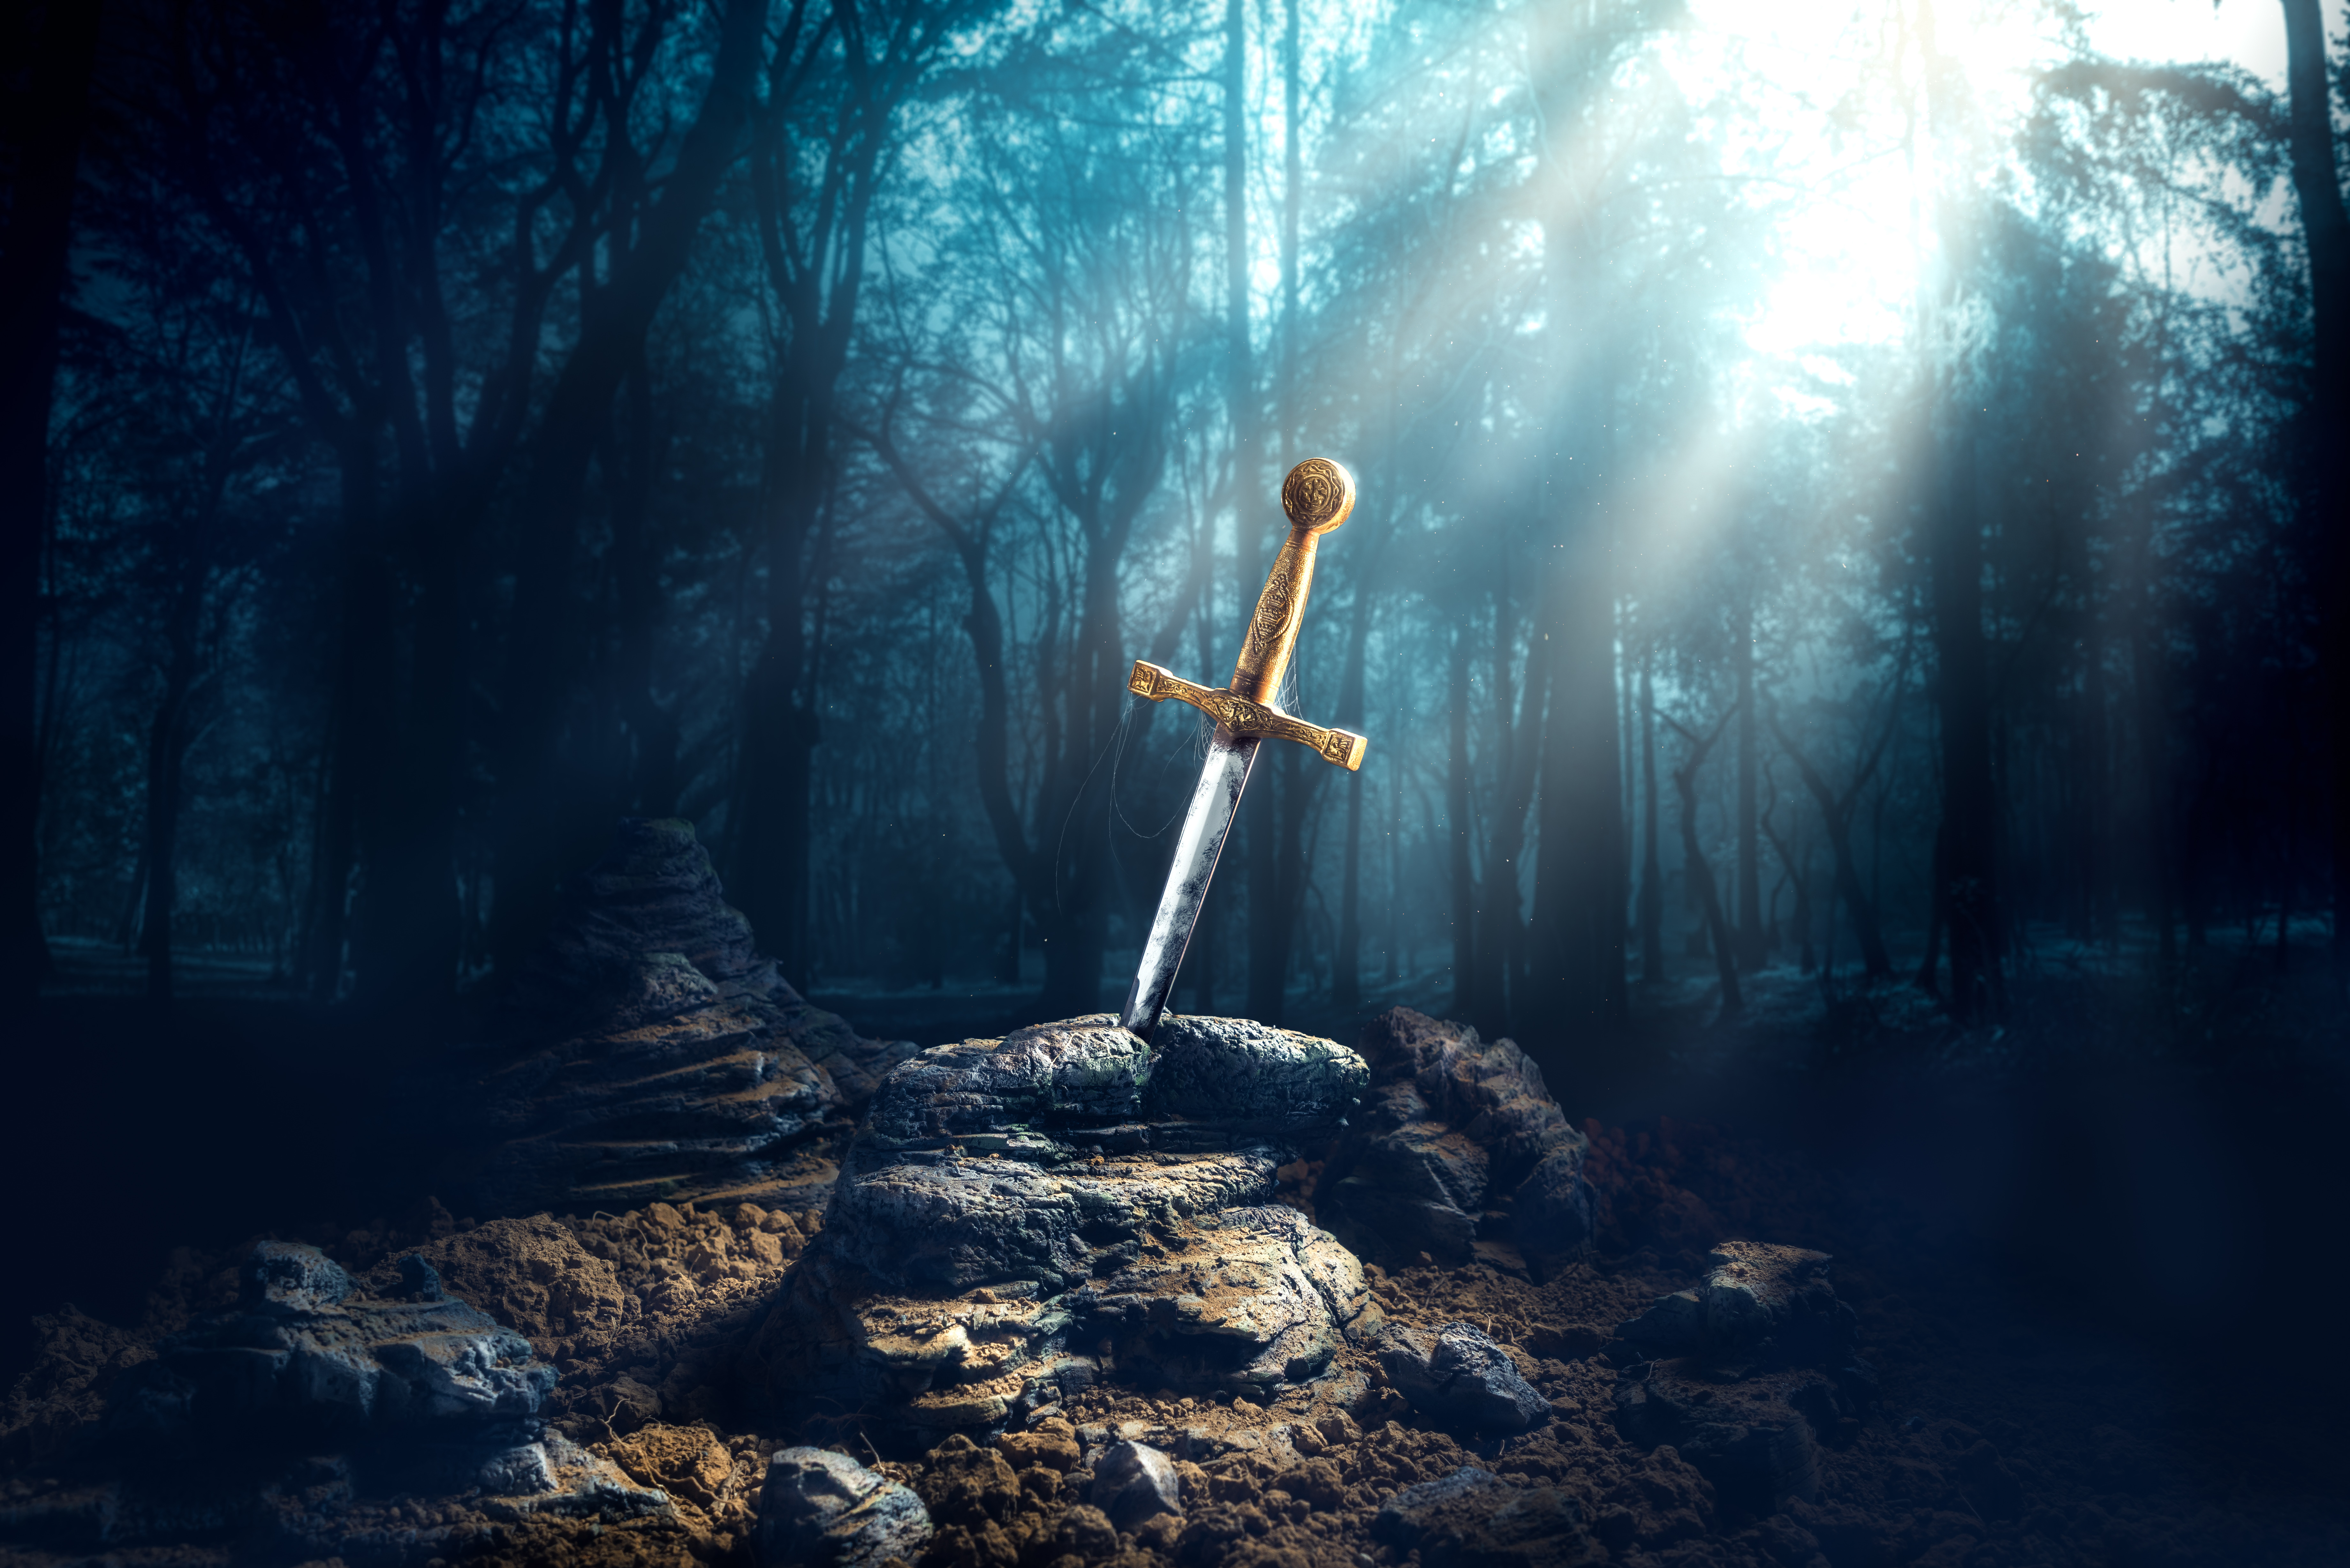 La légende veut qu'Arthur ait accédé au trône après avoir tiré l'épée du rocher – à ne pas confondre avec Excalibur, épée magique qui lui sera offerte par la fée Viviane. © fergregory, Adobe Stock